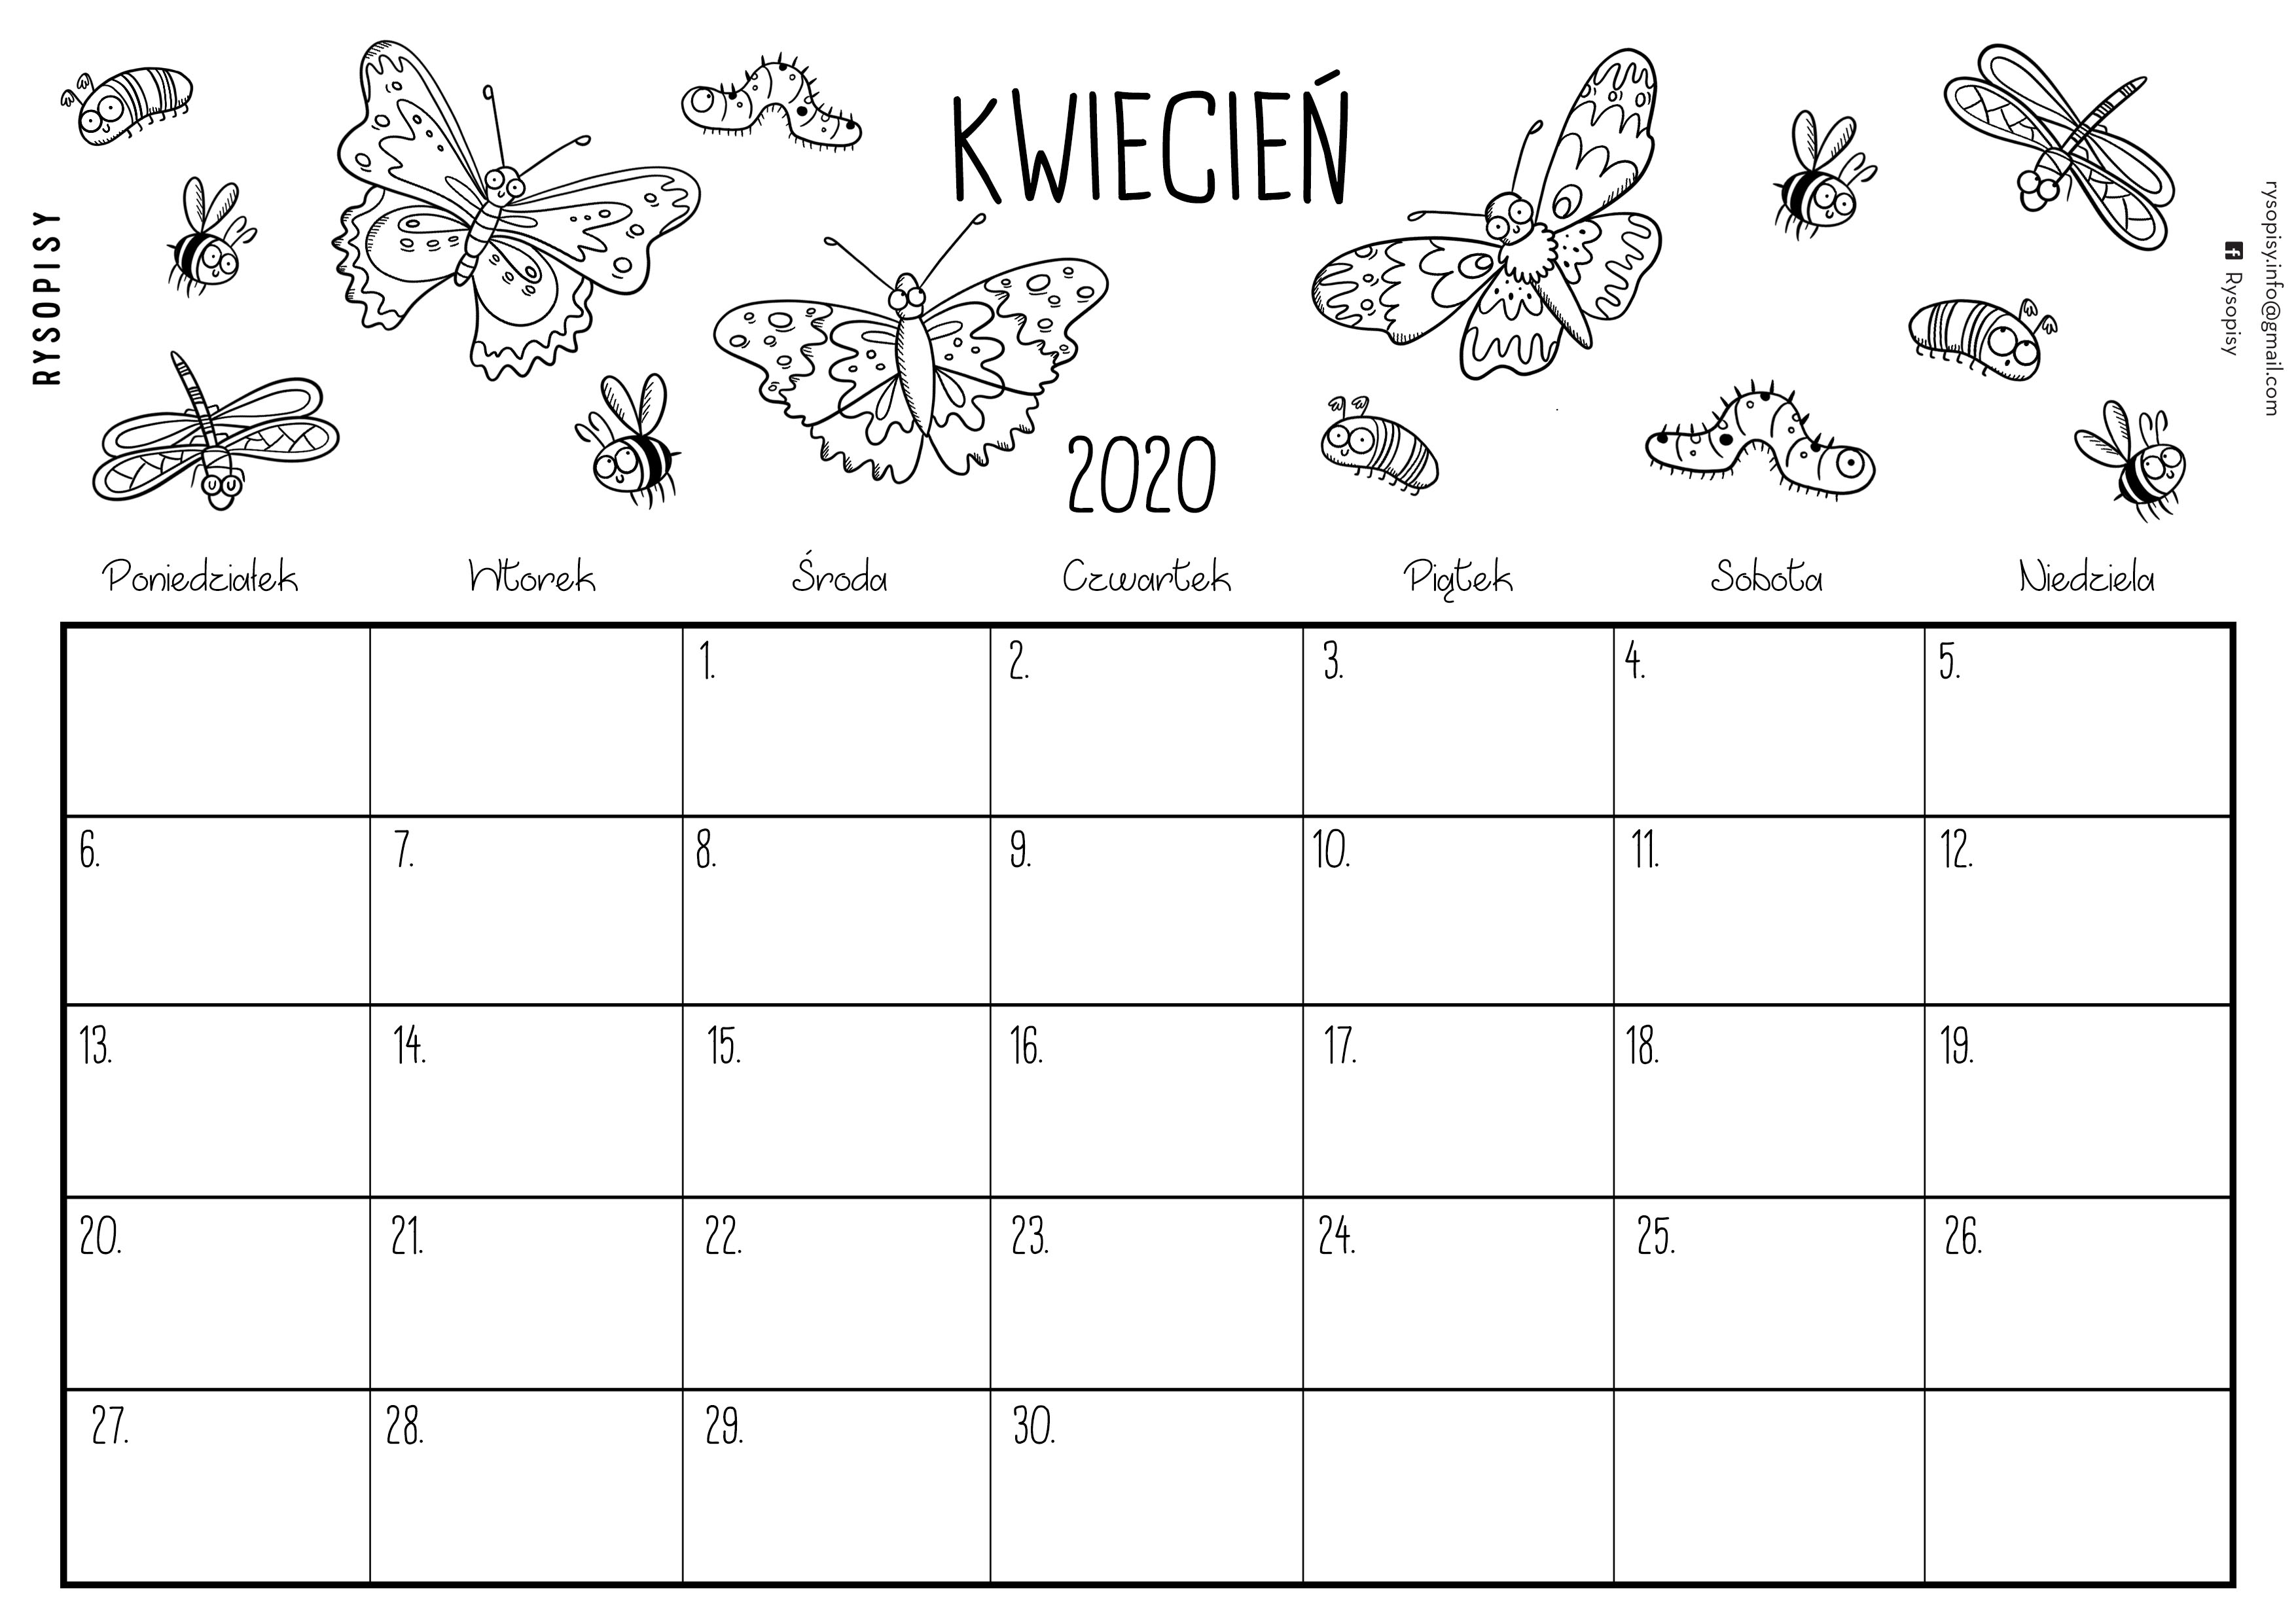 Kalendarz kwiecień 2020